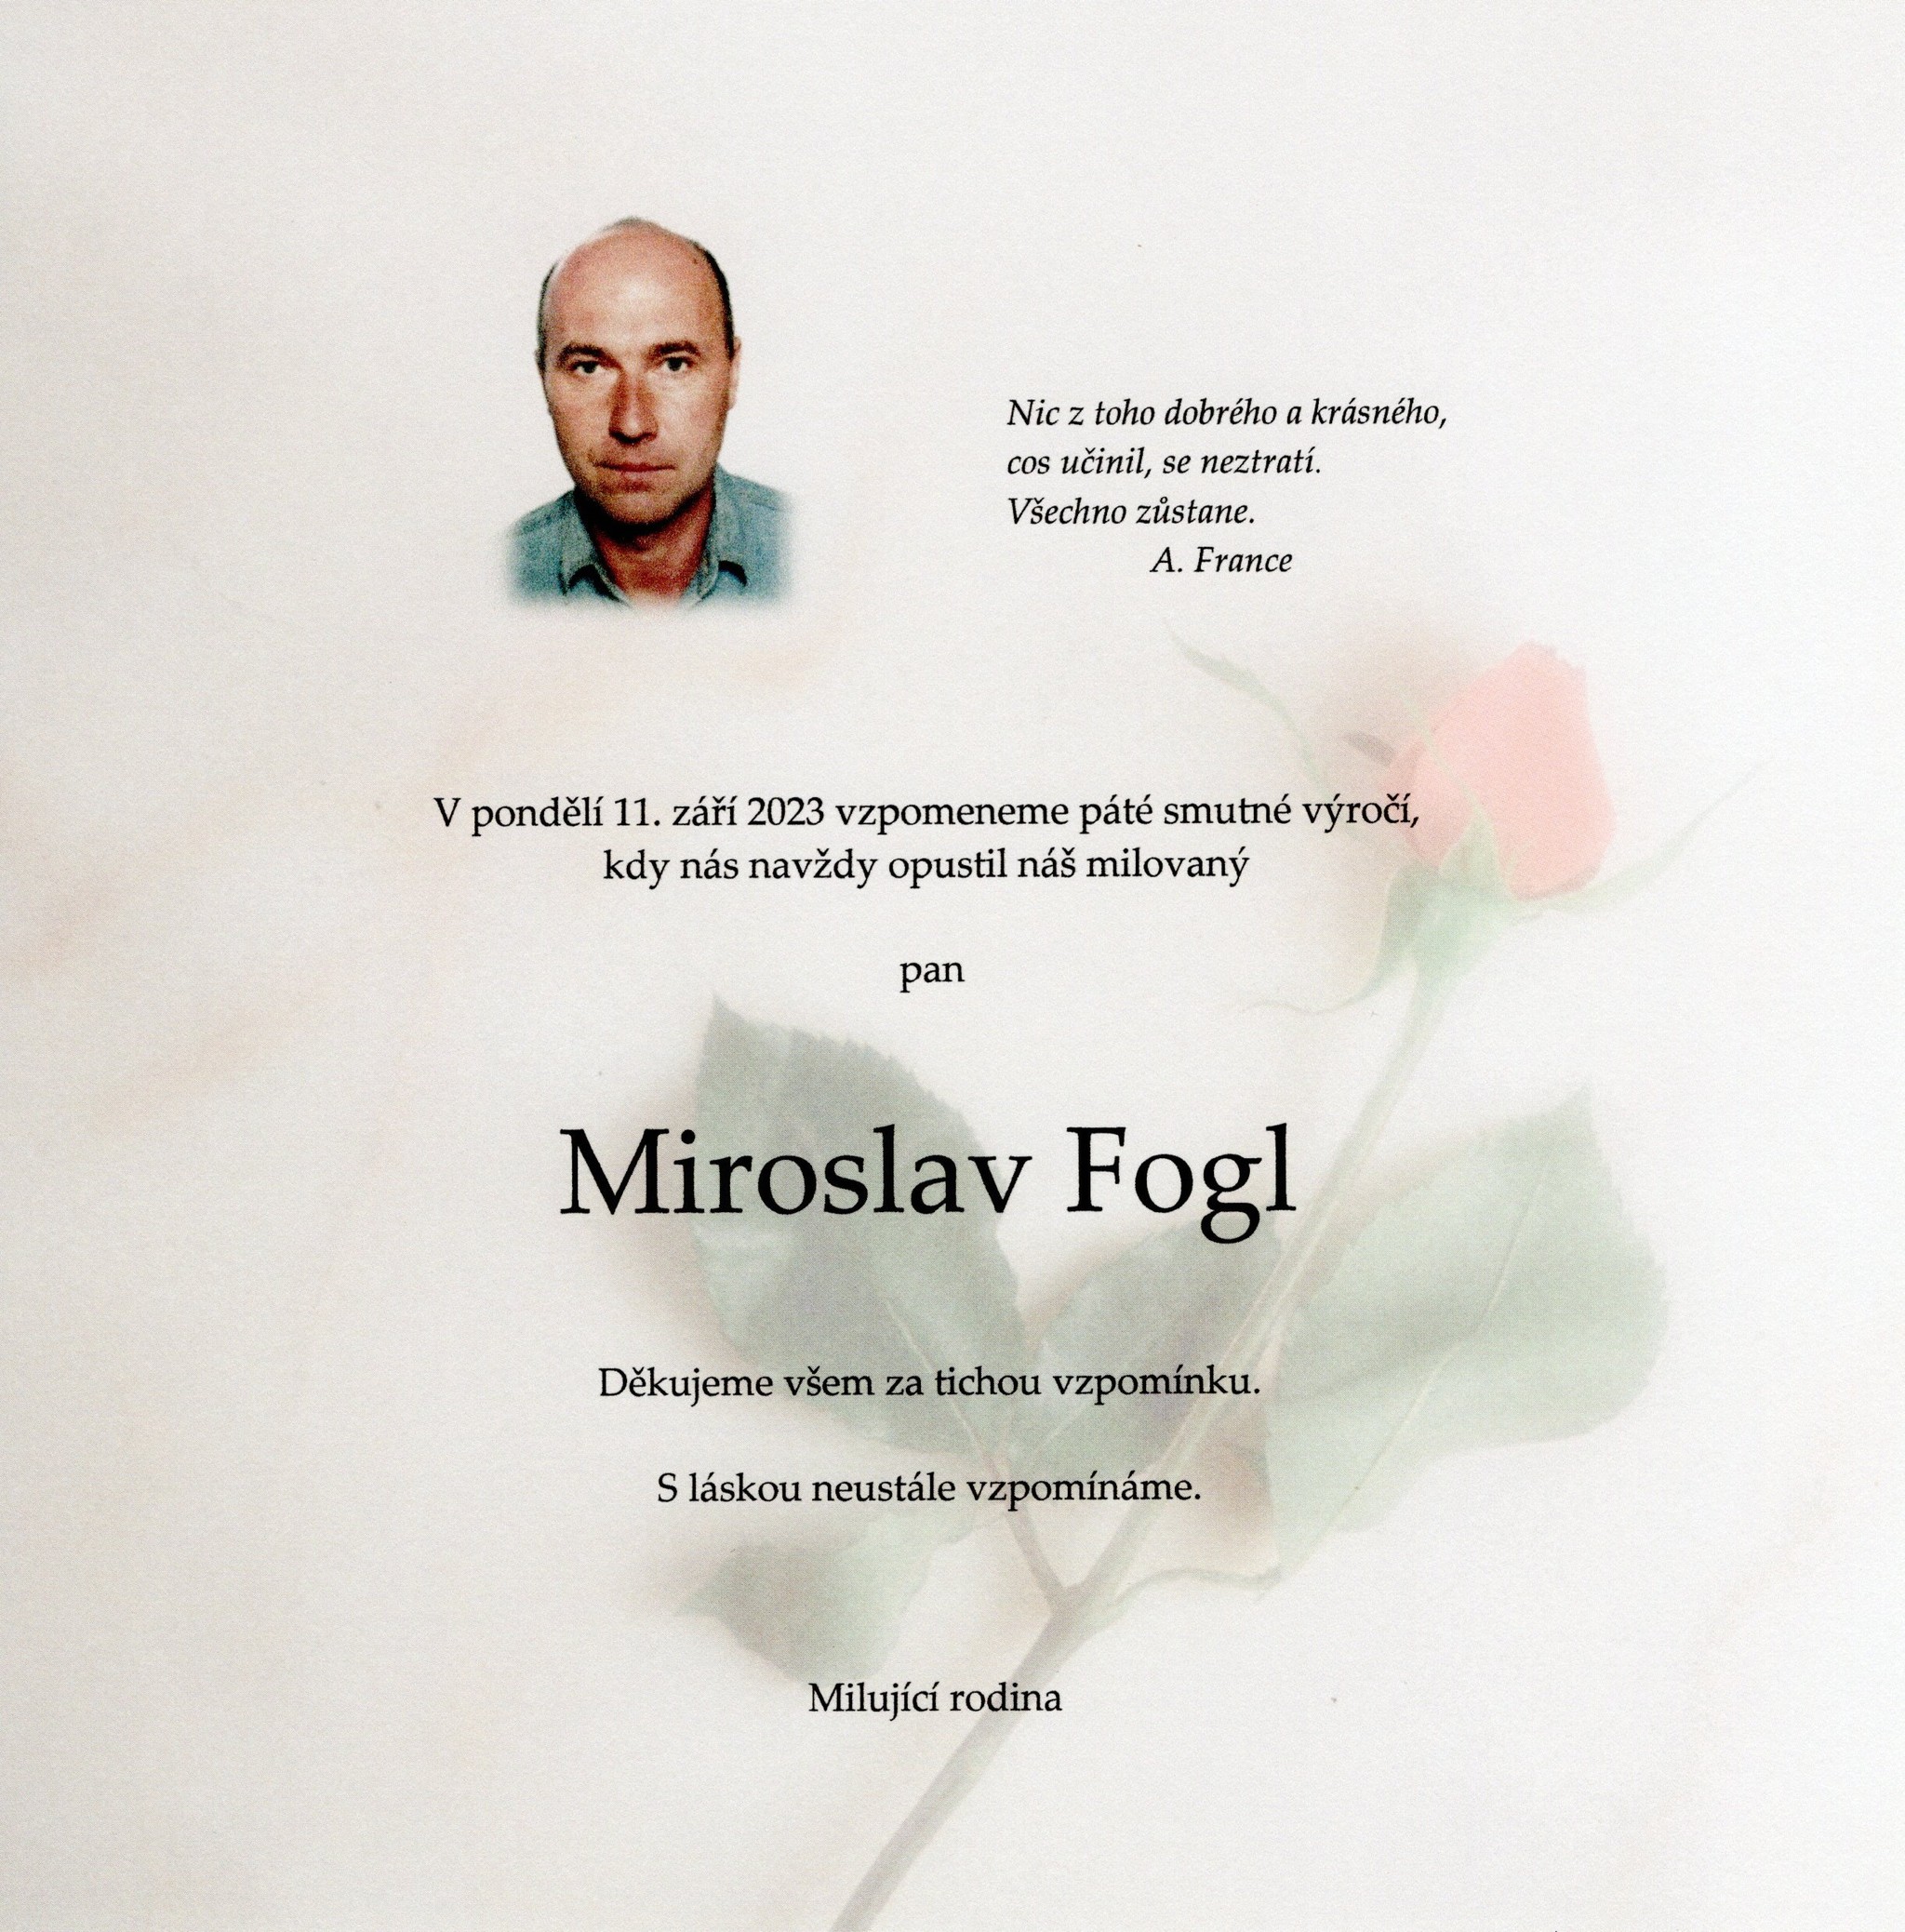 Miroslav Fogl